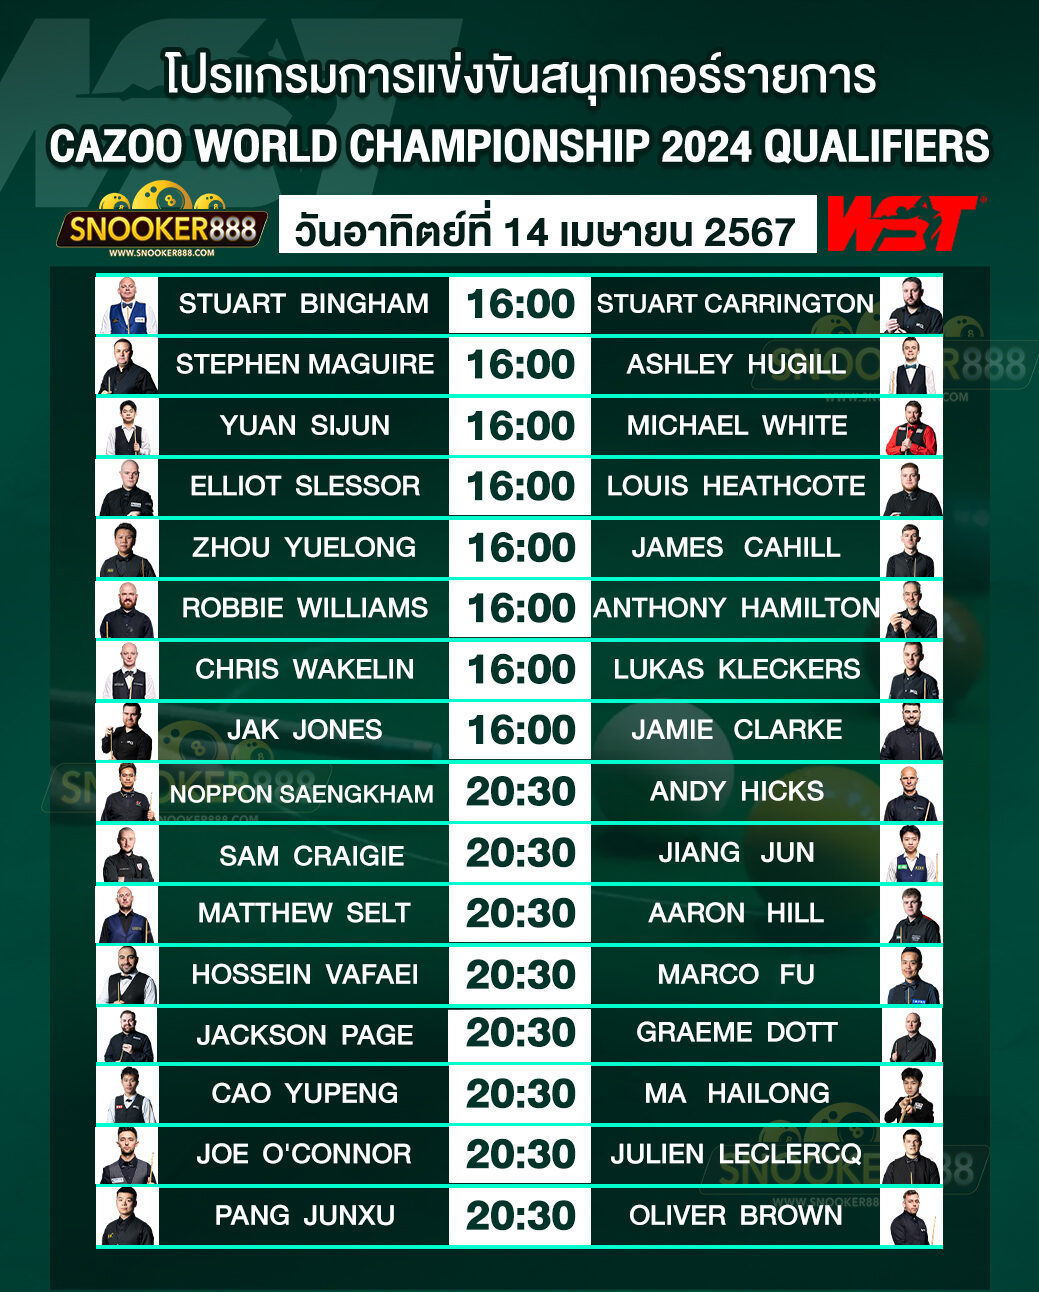 โปรแกรมการแข่งขันสนุกเกอร์ CAZOO WORLD CHAMPIONSHIP 2024 QUALIFIERS วันที่ 14 เม.ย. 67